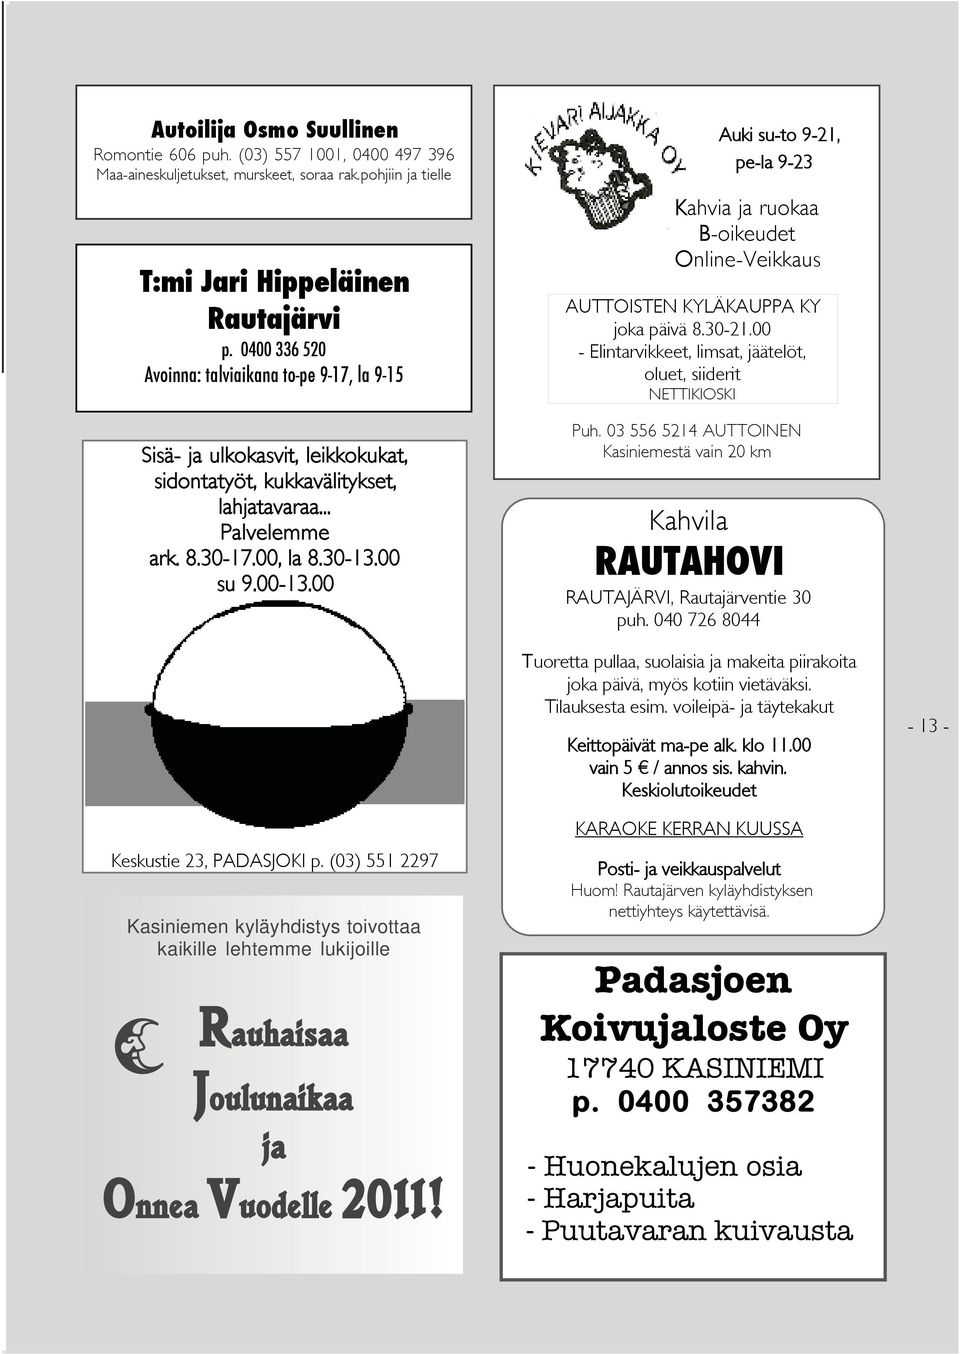 00 PDSKUKK Keskustie 23, PDSJOKI p. (03) 551 2297 Kasiniemen kyläyhdistys toivottaa kaikille lehtemme lukijoille Rauhaisaa Joulunaikaa ja Onnea Vuodelle 2011!